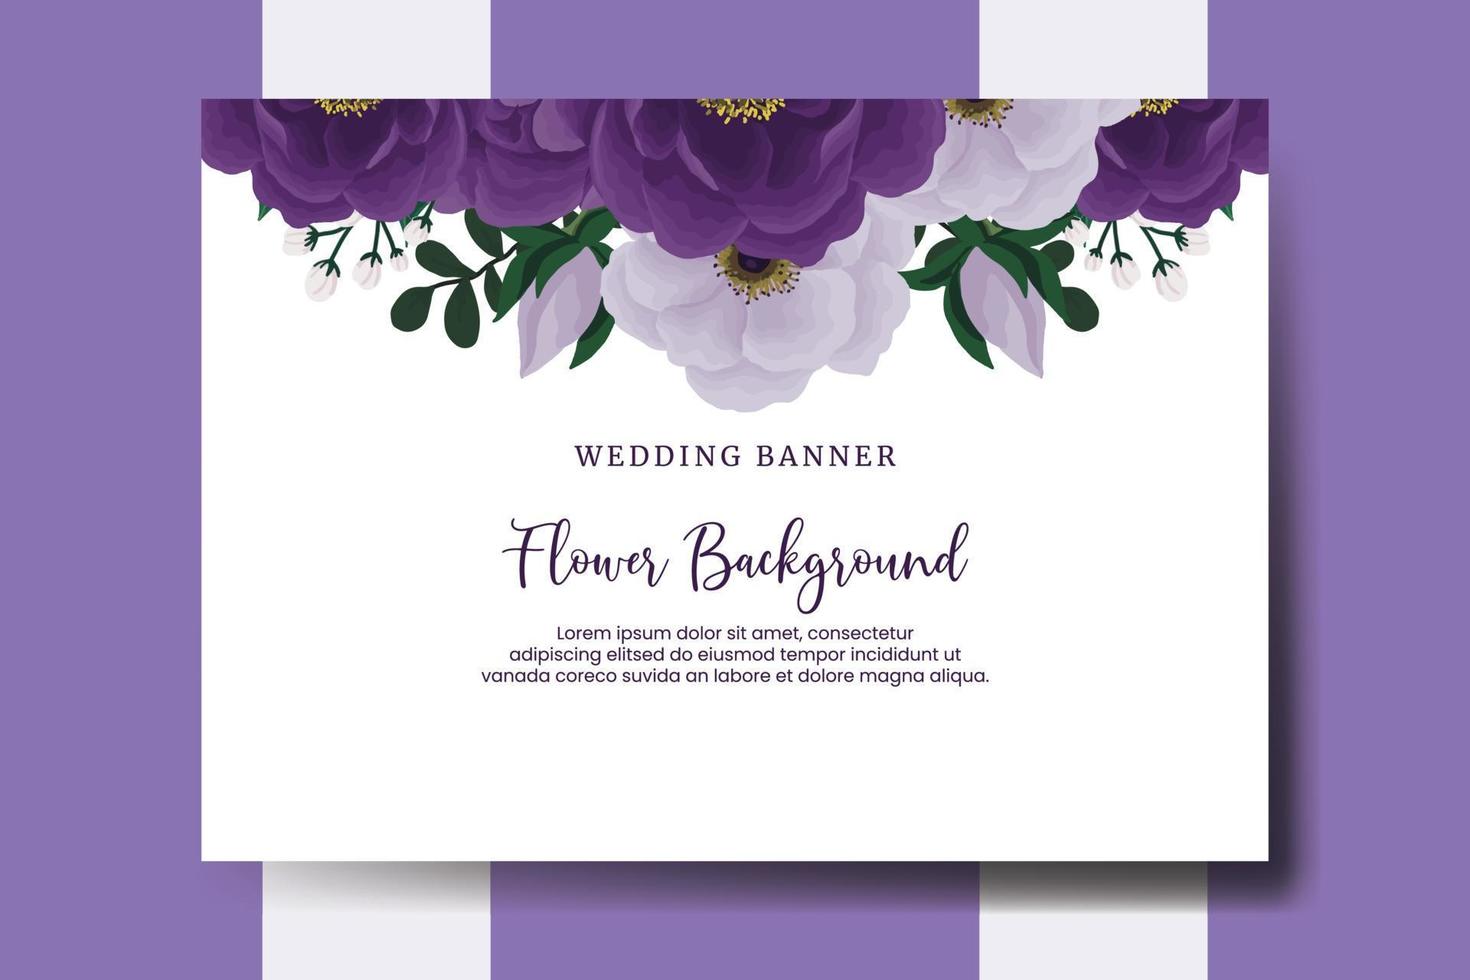 Fondo de flor de banner de boda, plantilla de diseño de flor de peonía púrpura dibujado a mano acuarela digital vector